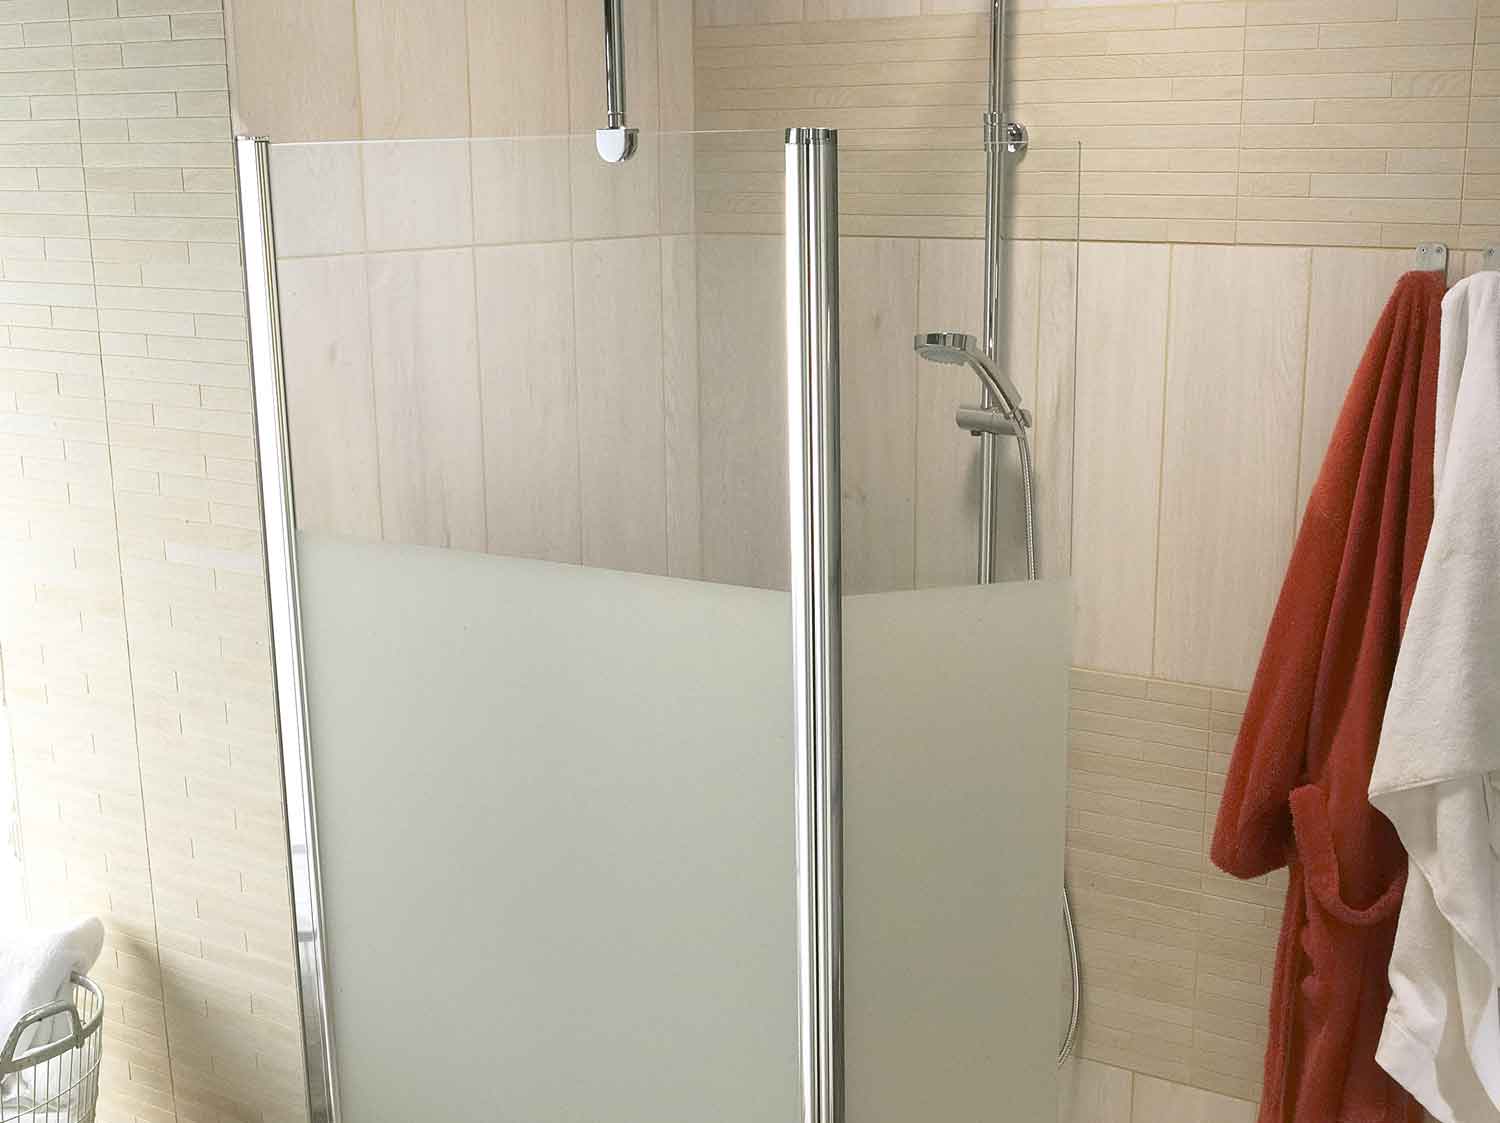 Salle de bains coin cabine simple avec douche en verre et portes